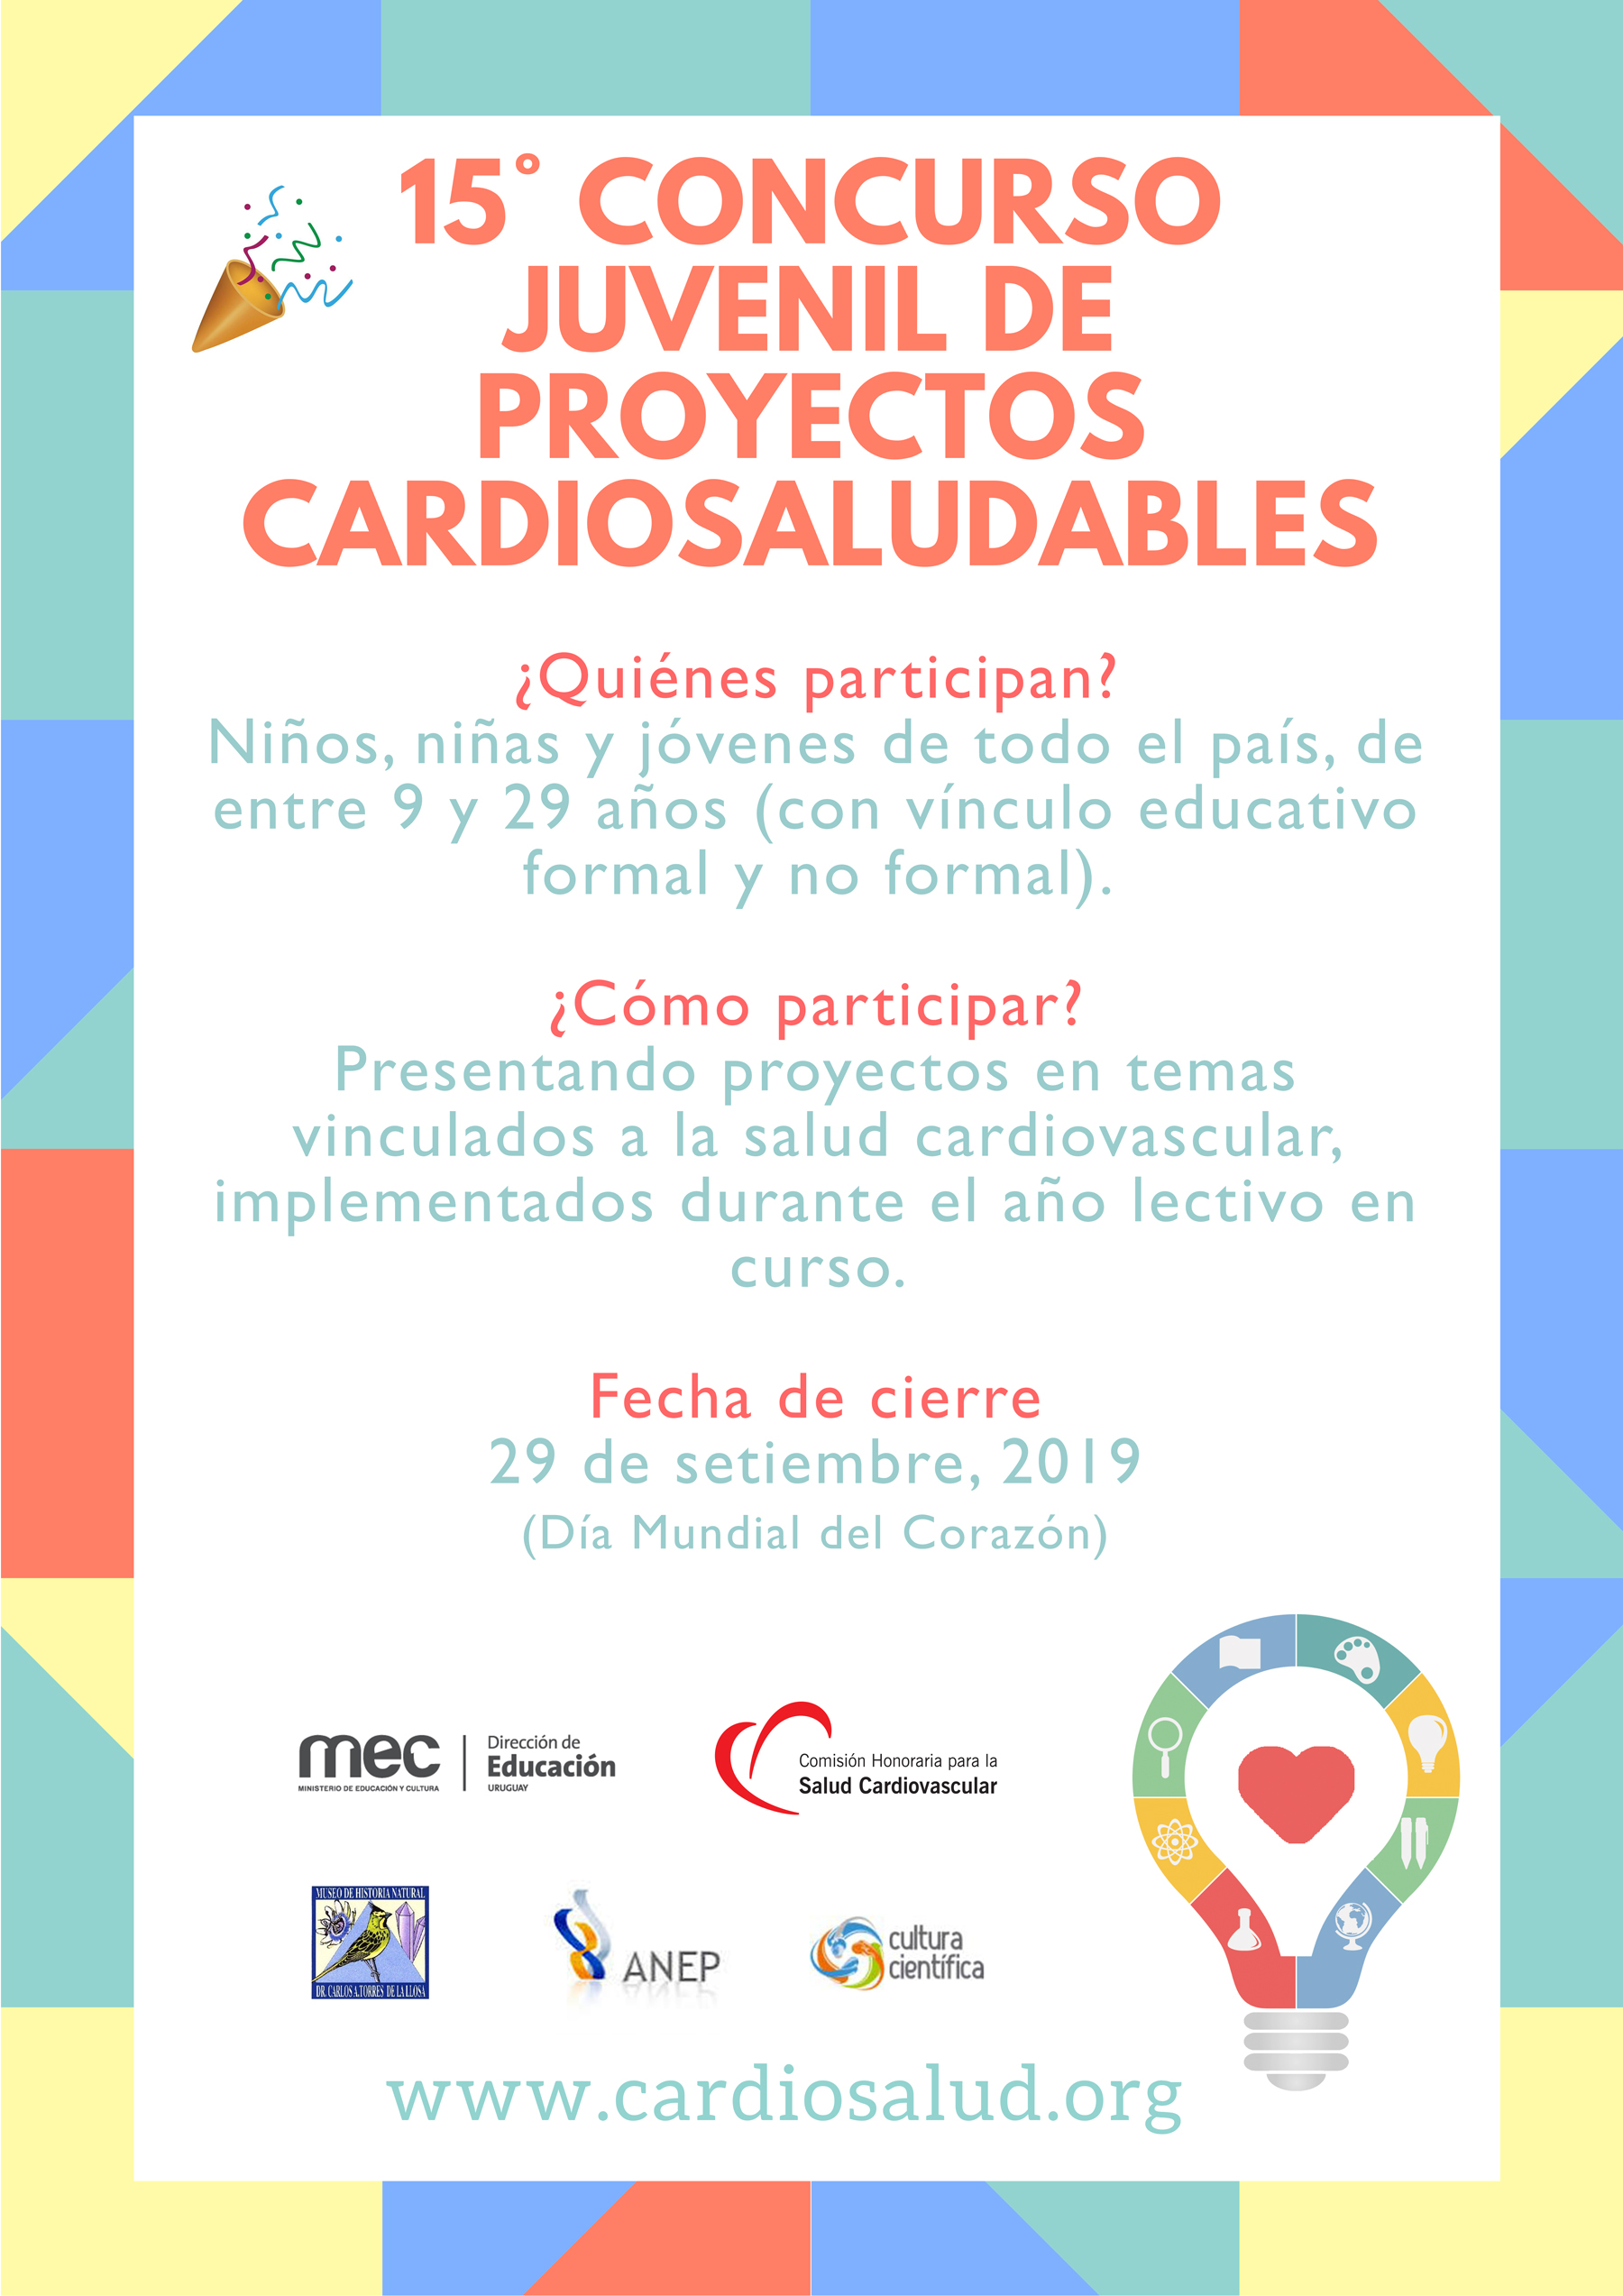 Se lanza el 15° Concurso Juvenil de Proyectos Cardiosaludables